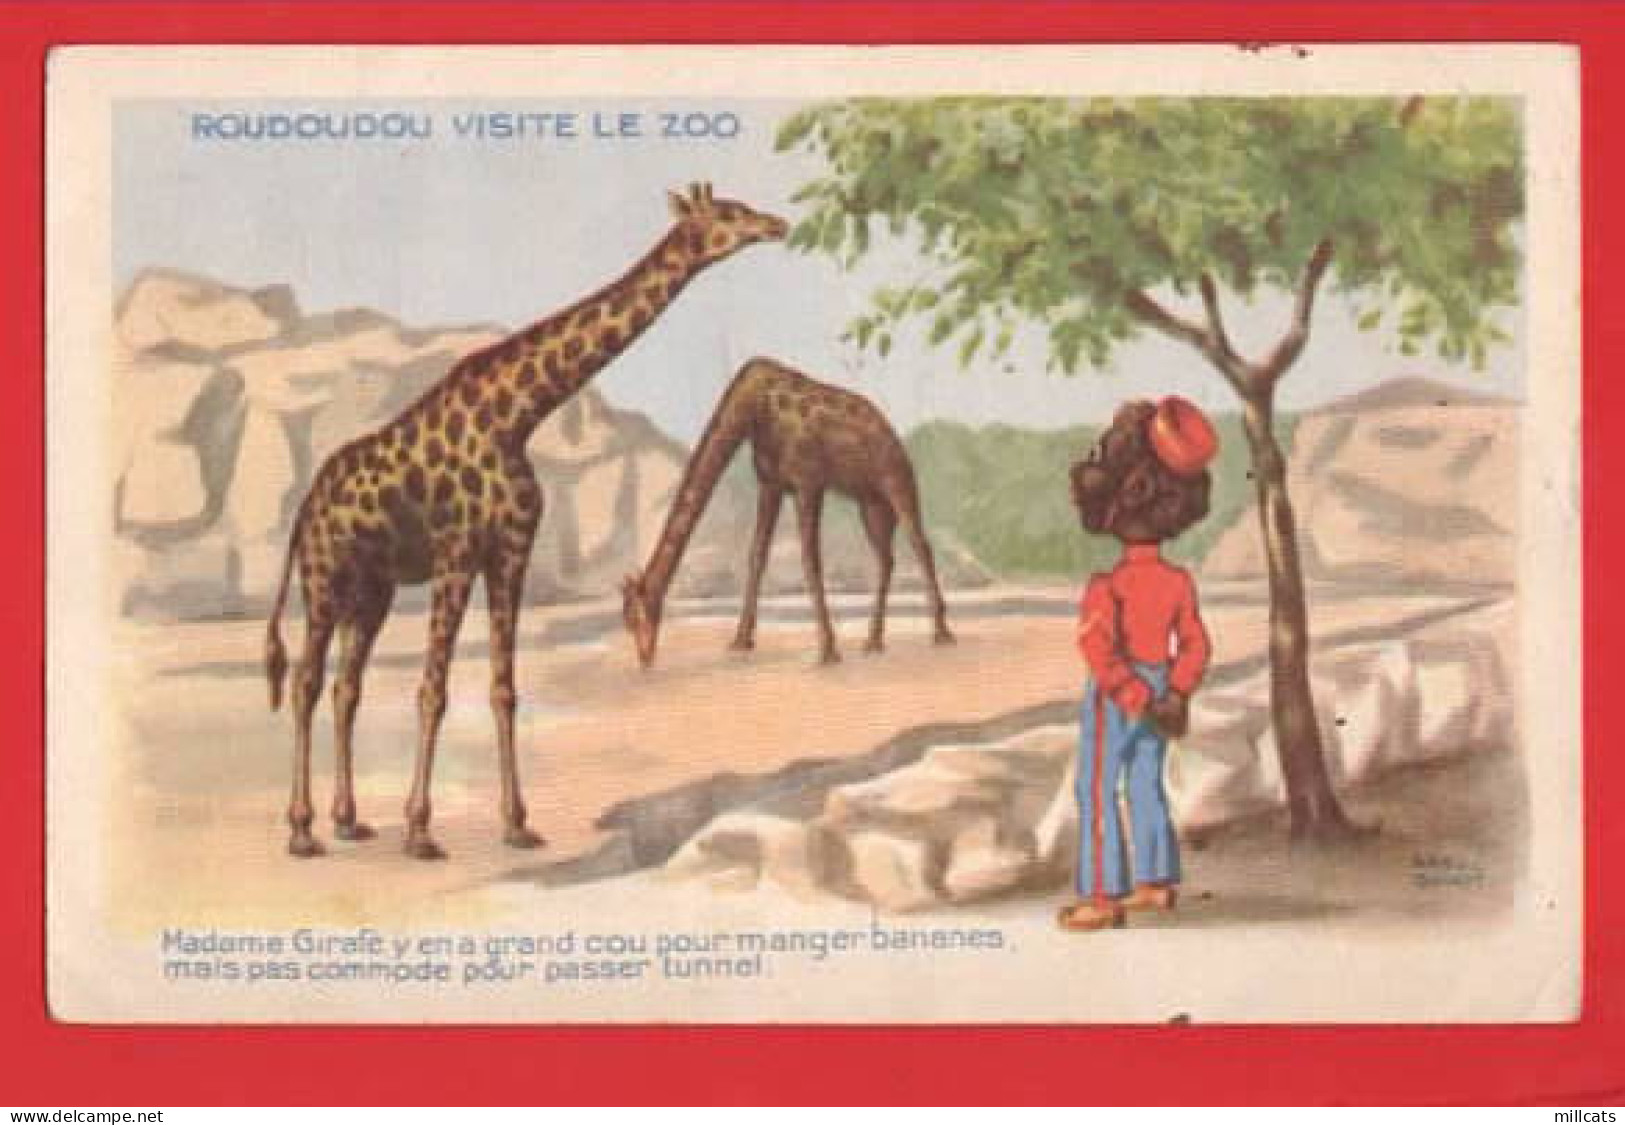 ROUDOUDOU VISITE LE ZOO   GIRAFFES - Girafes